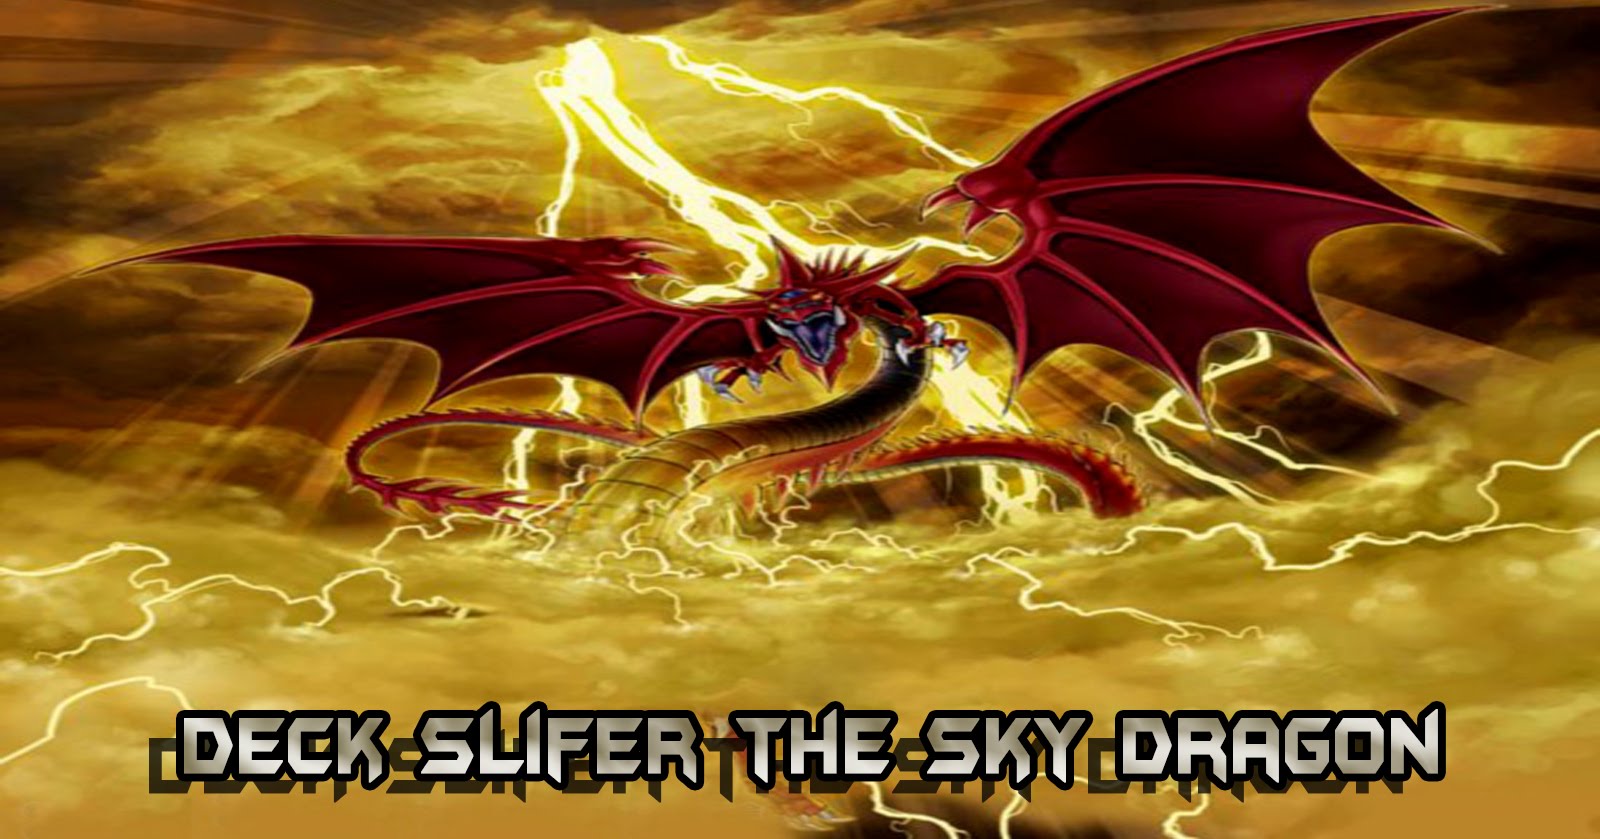 Find more Slifer The Sky Dragon Wallpaper Px Slifer The Sky Dra...